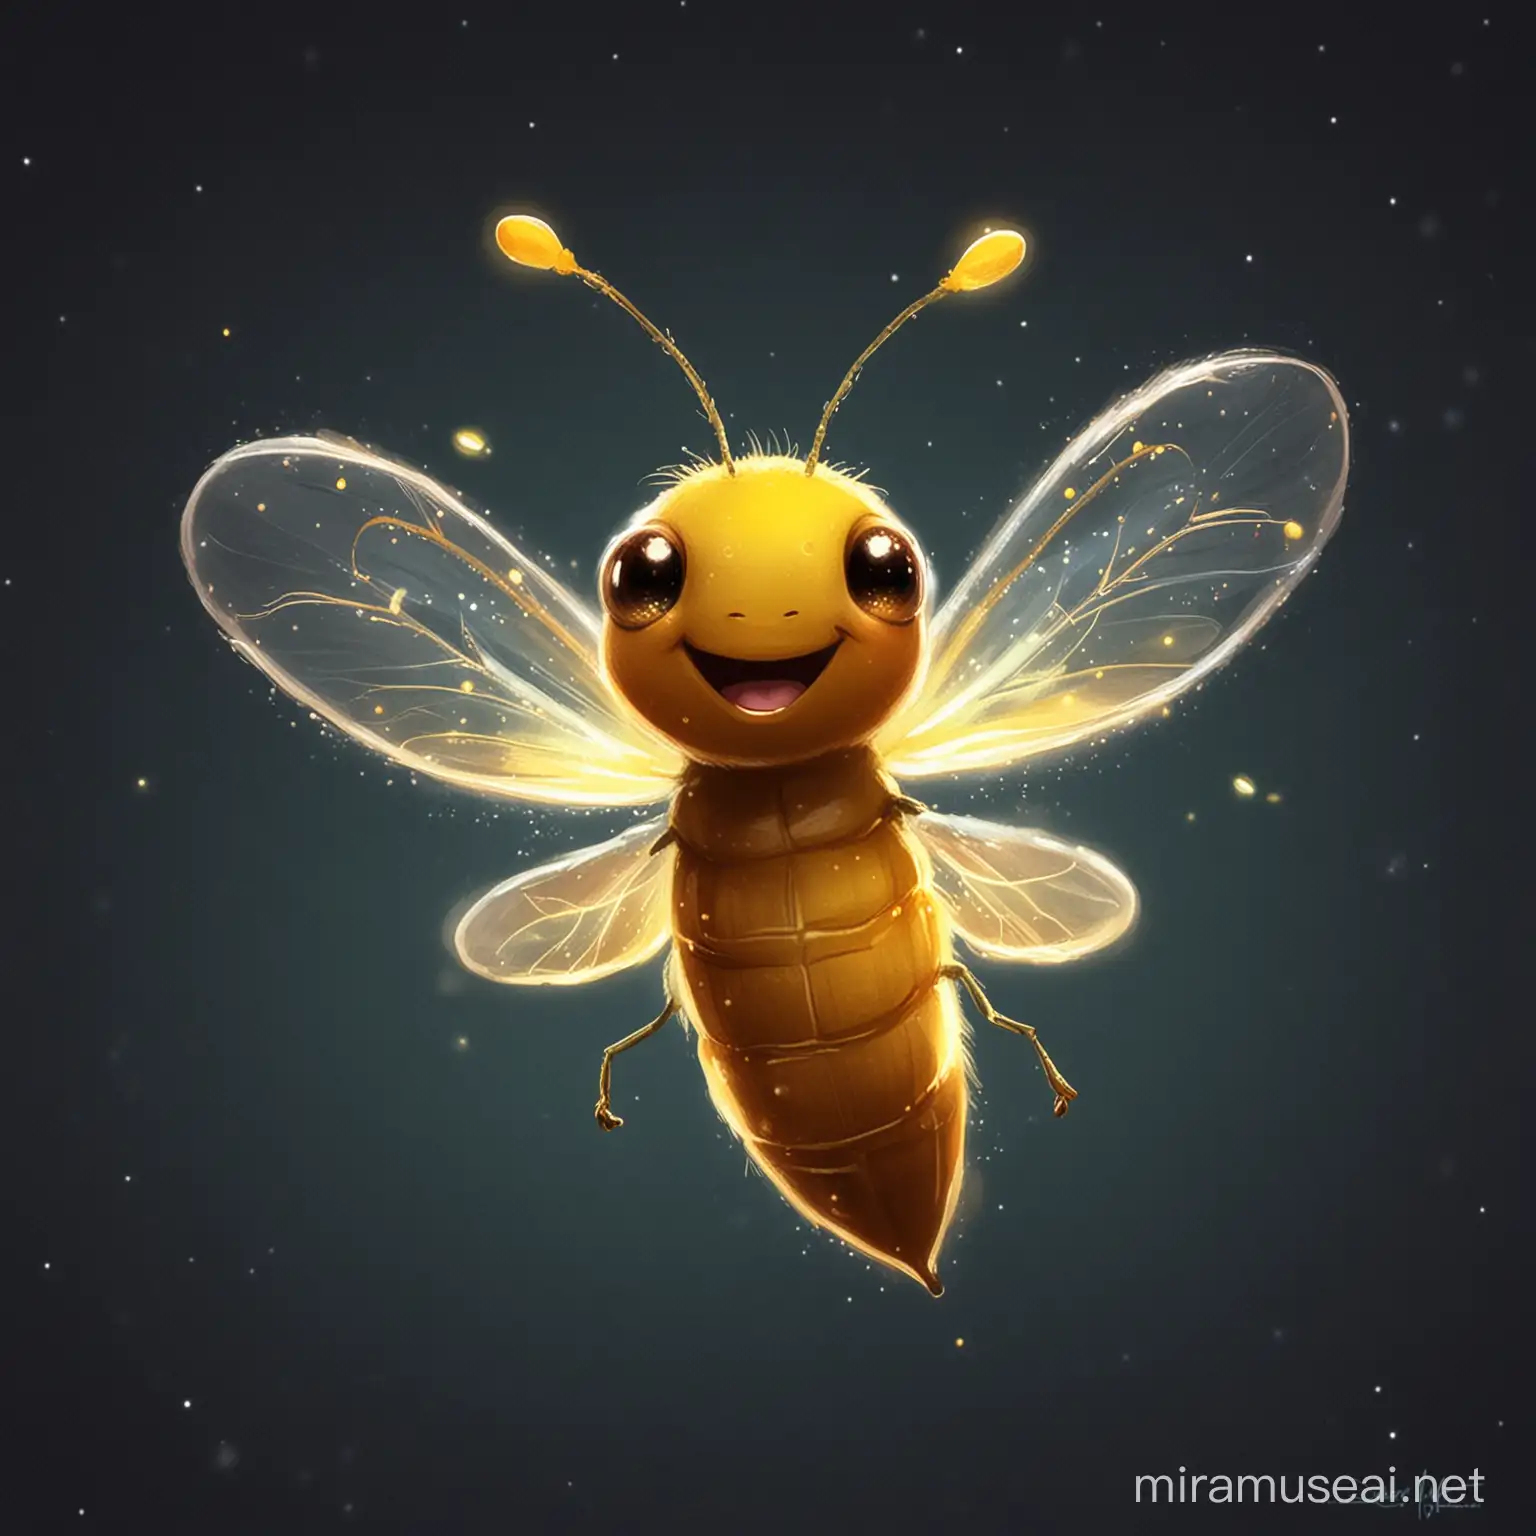 Joyful Firefly Fluttering in a Moonlit Meadow